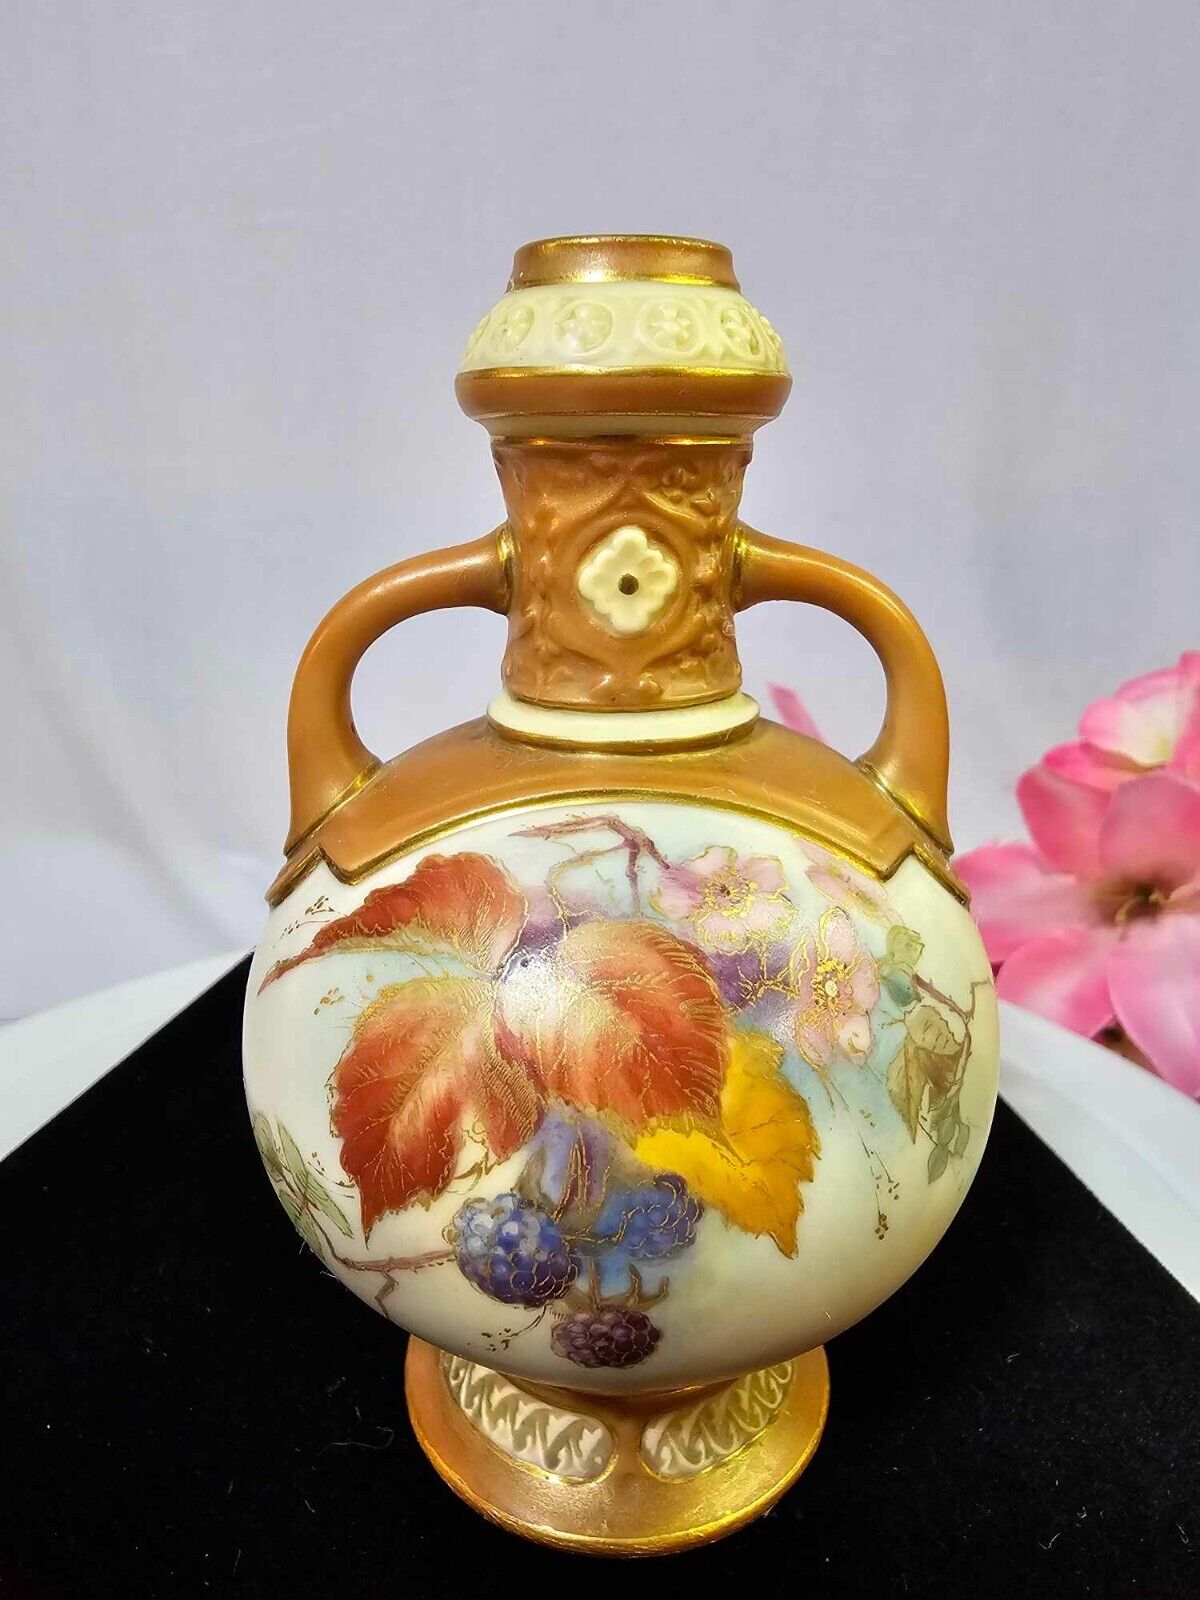 1904 Royal Worcester Bud Vase w/ Pink Flowers & Berries 2 handle porcelain- B9